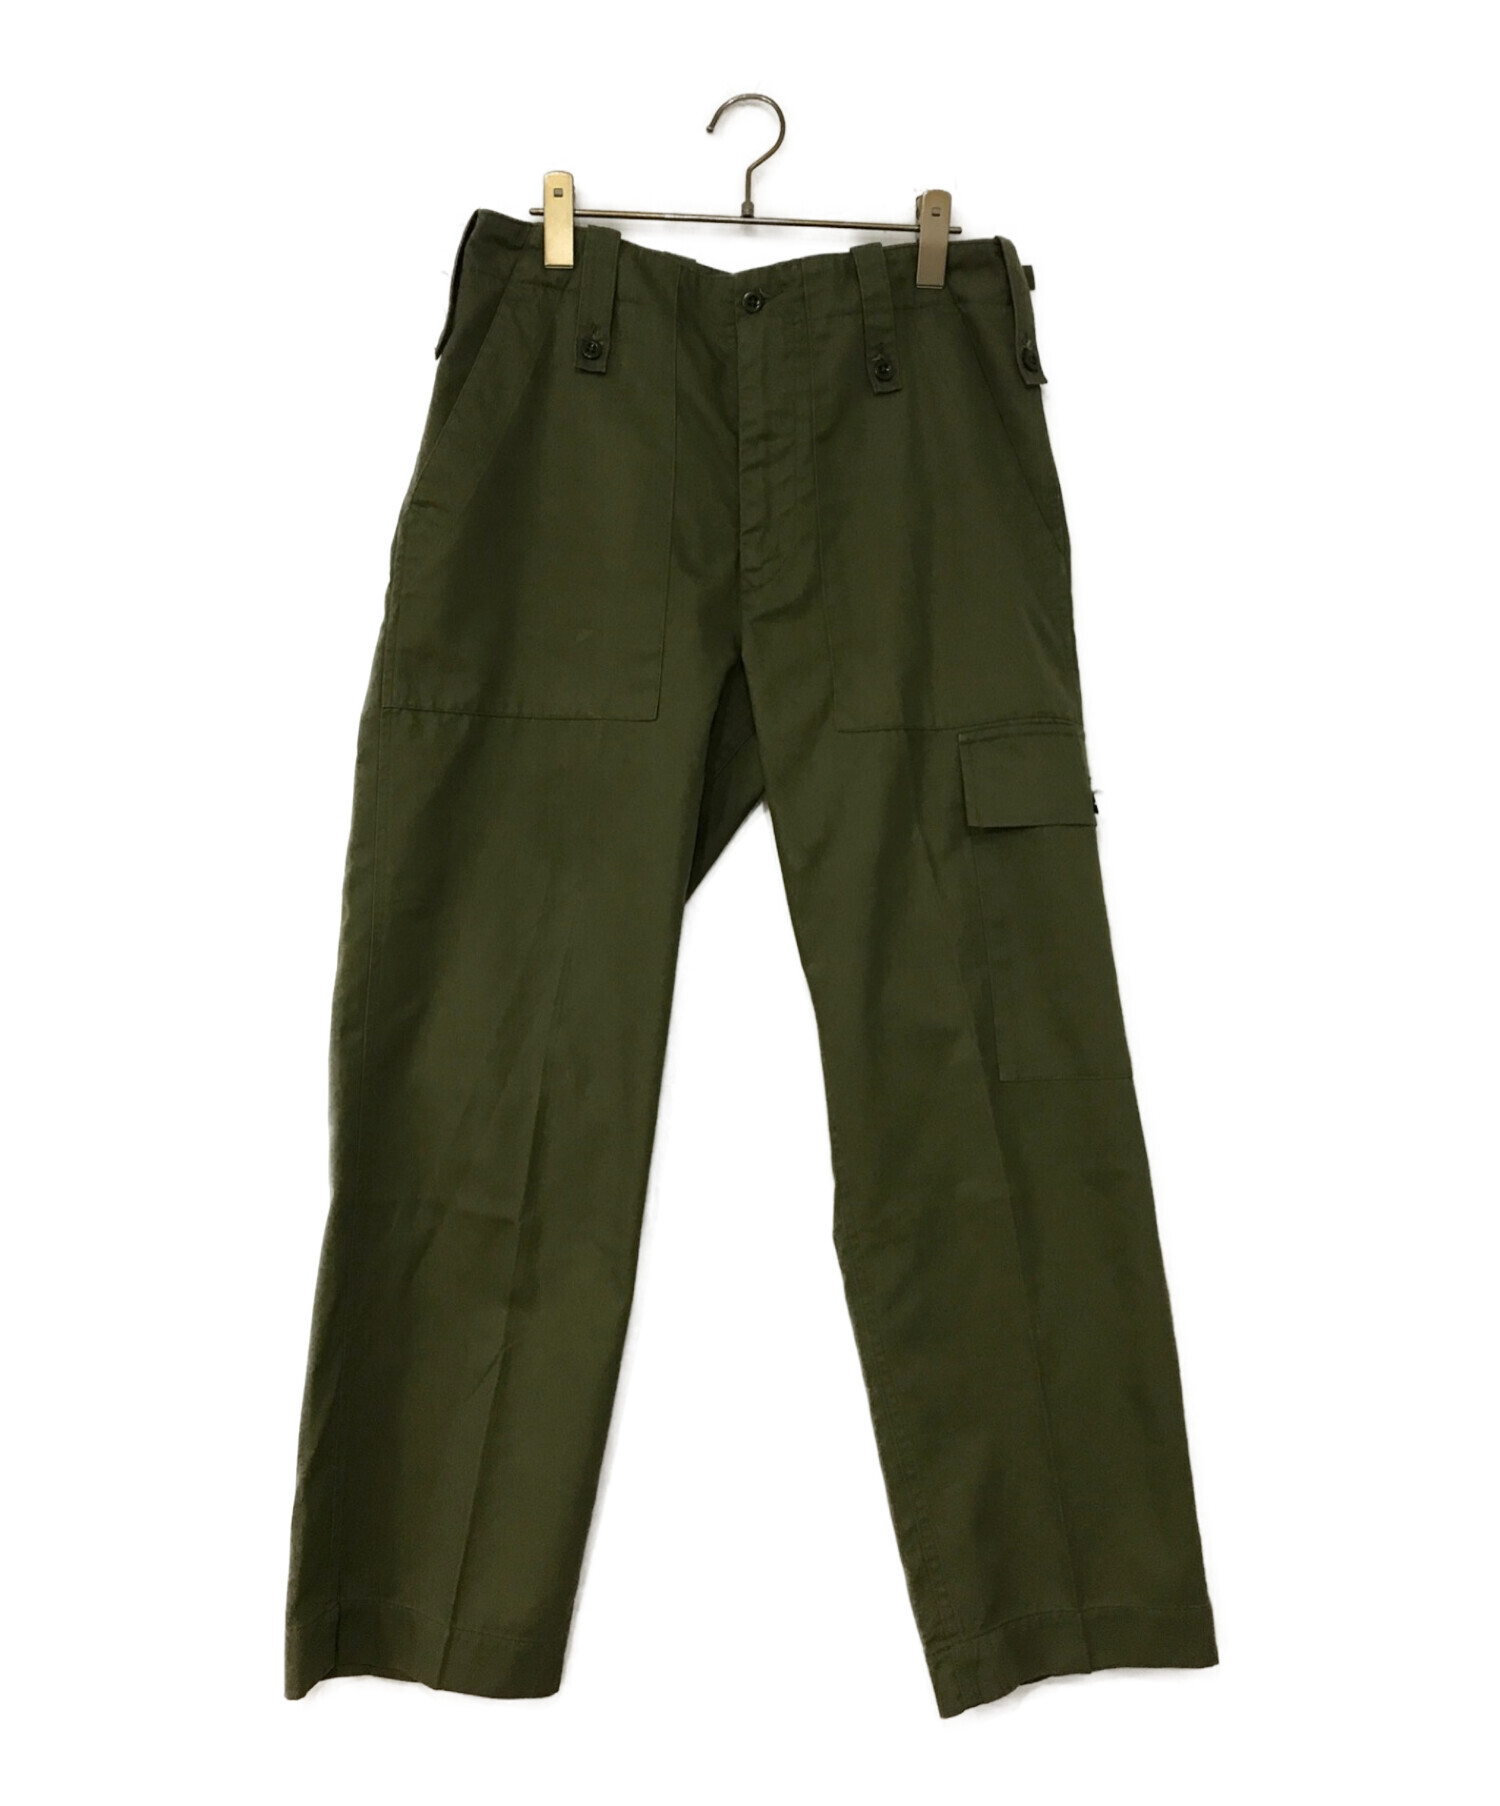 【美品、実物】British Army utility pants カーキ